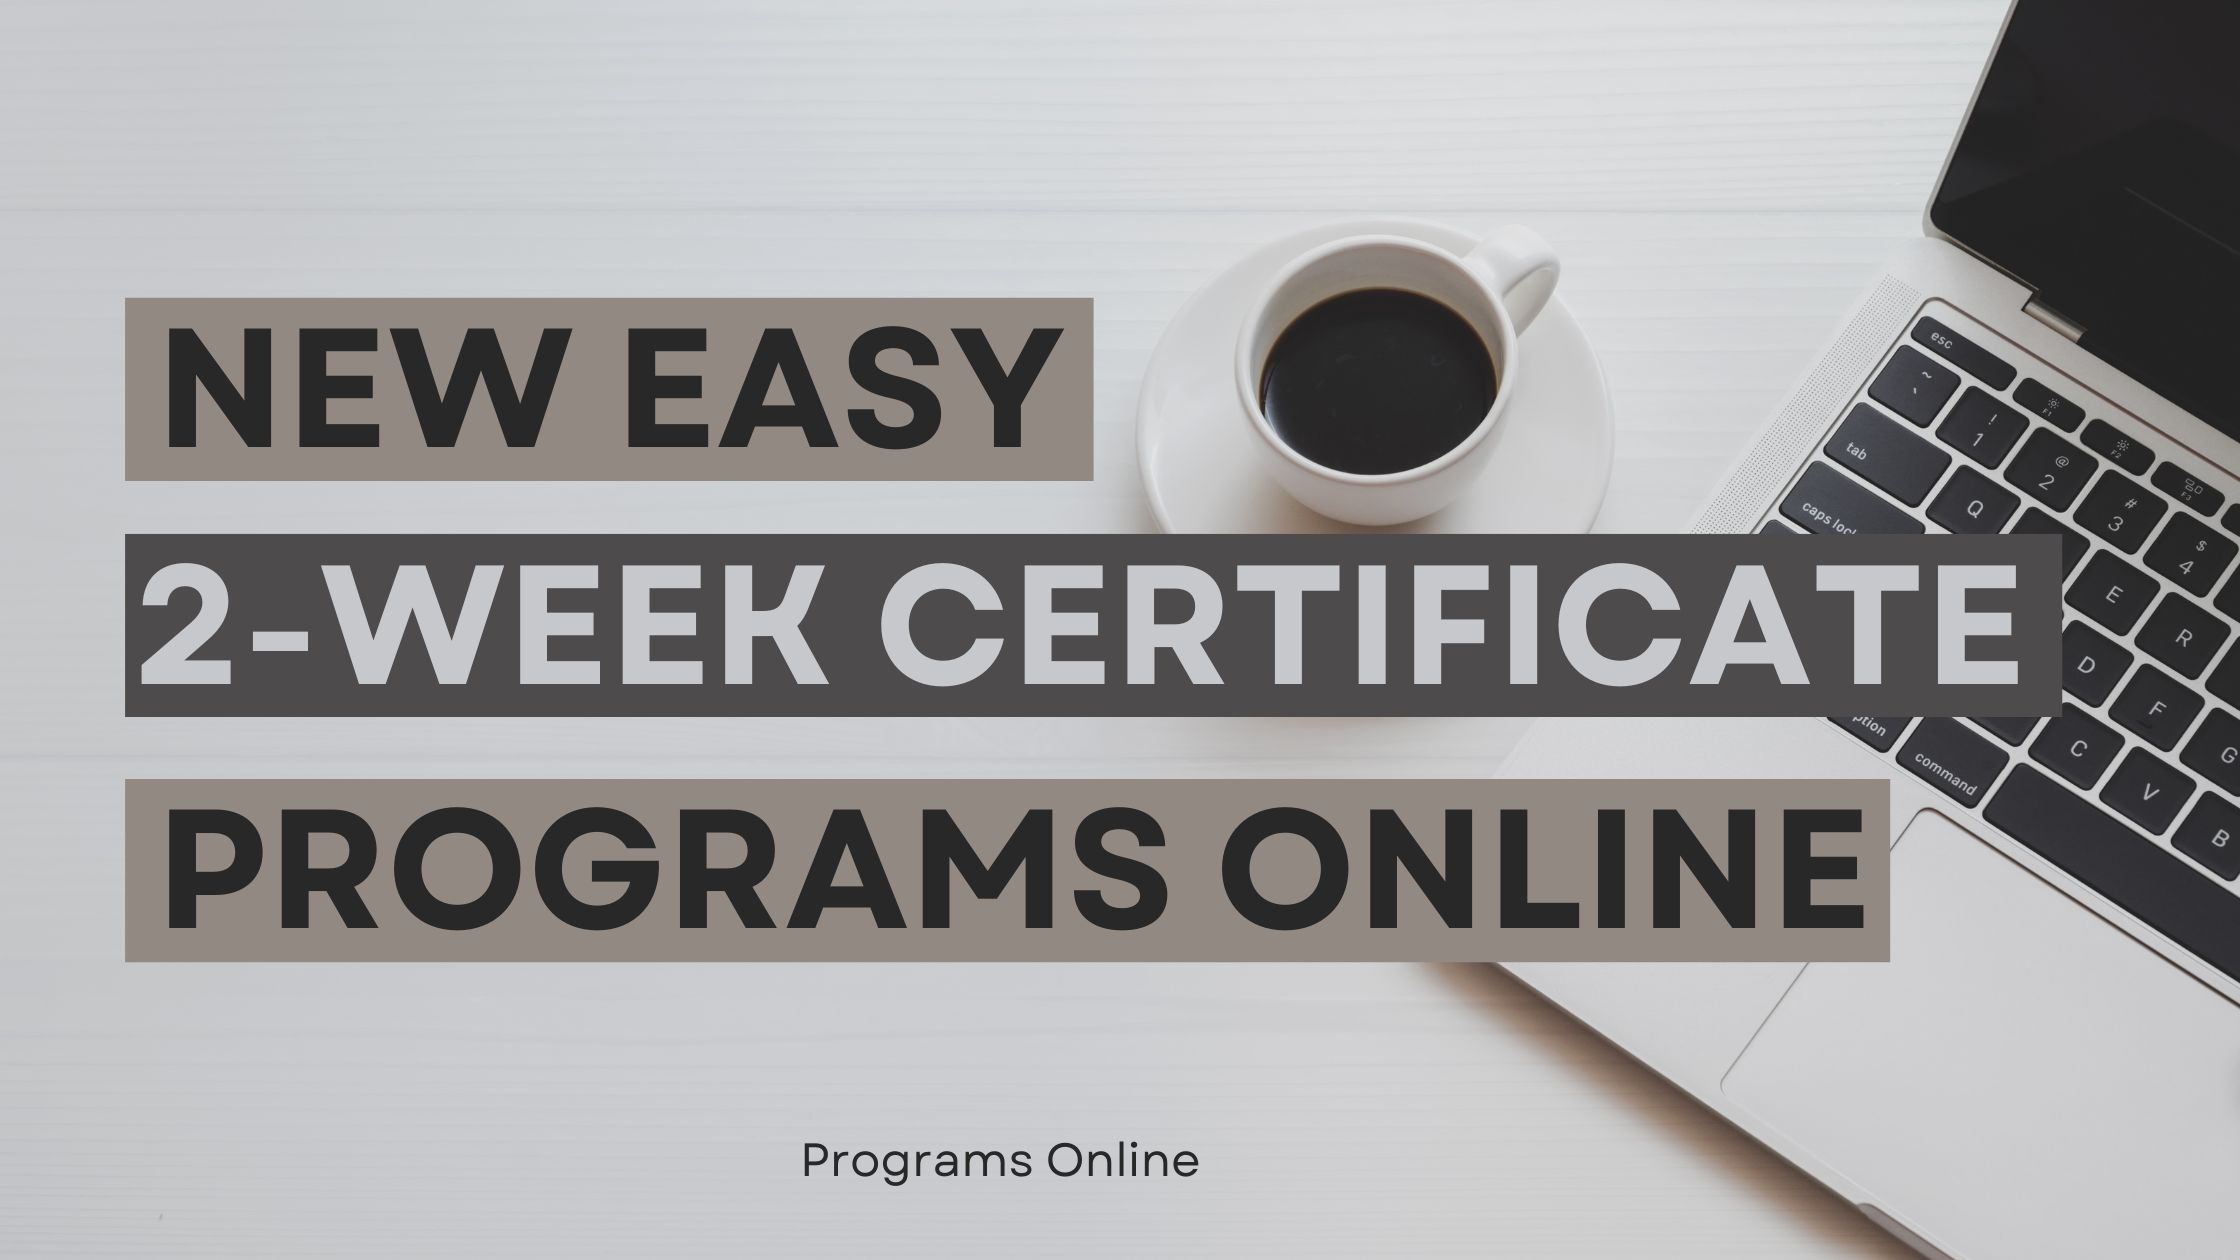 New Easy 2-Week Certificate Programs Online